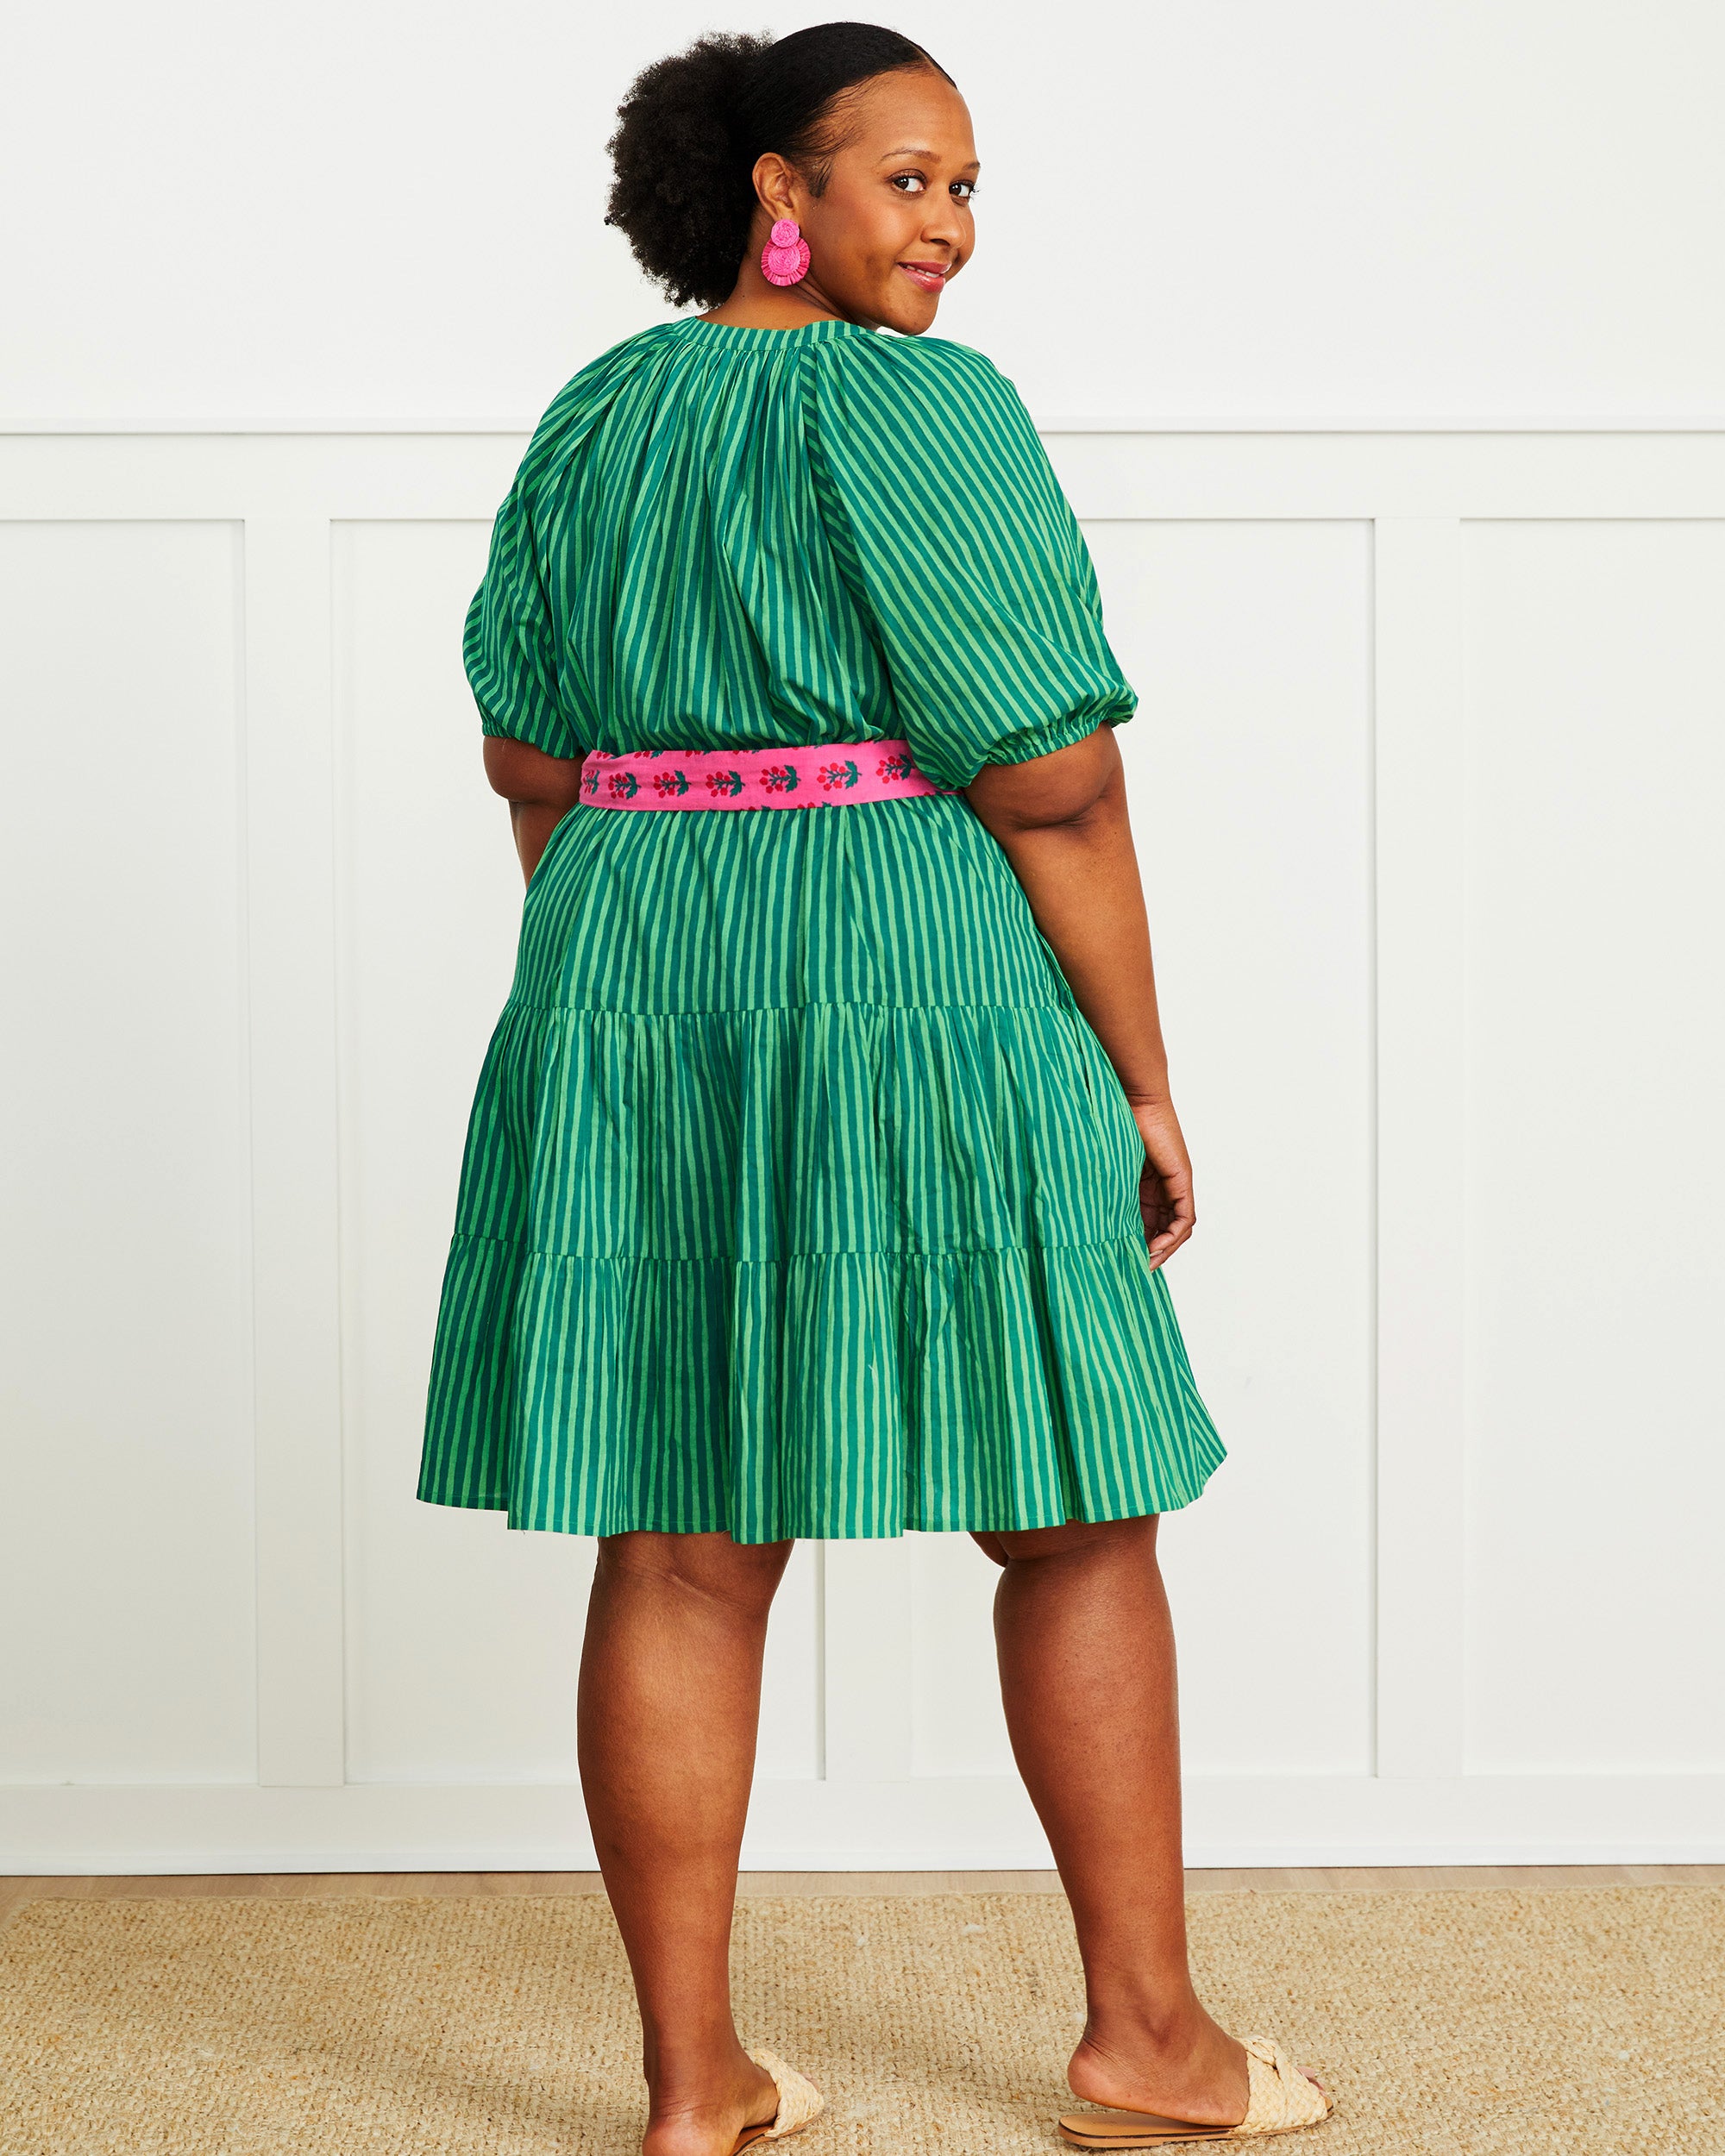 Seaside Stripes - Lightweight It's a Date Dress - Clover Green - Printfresh